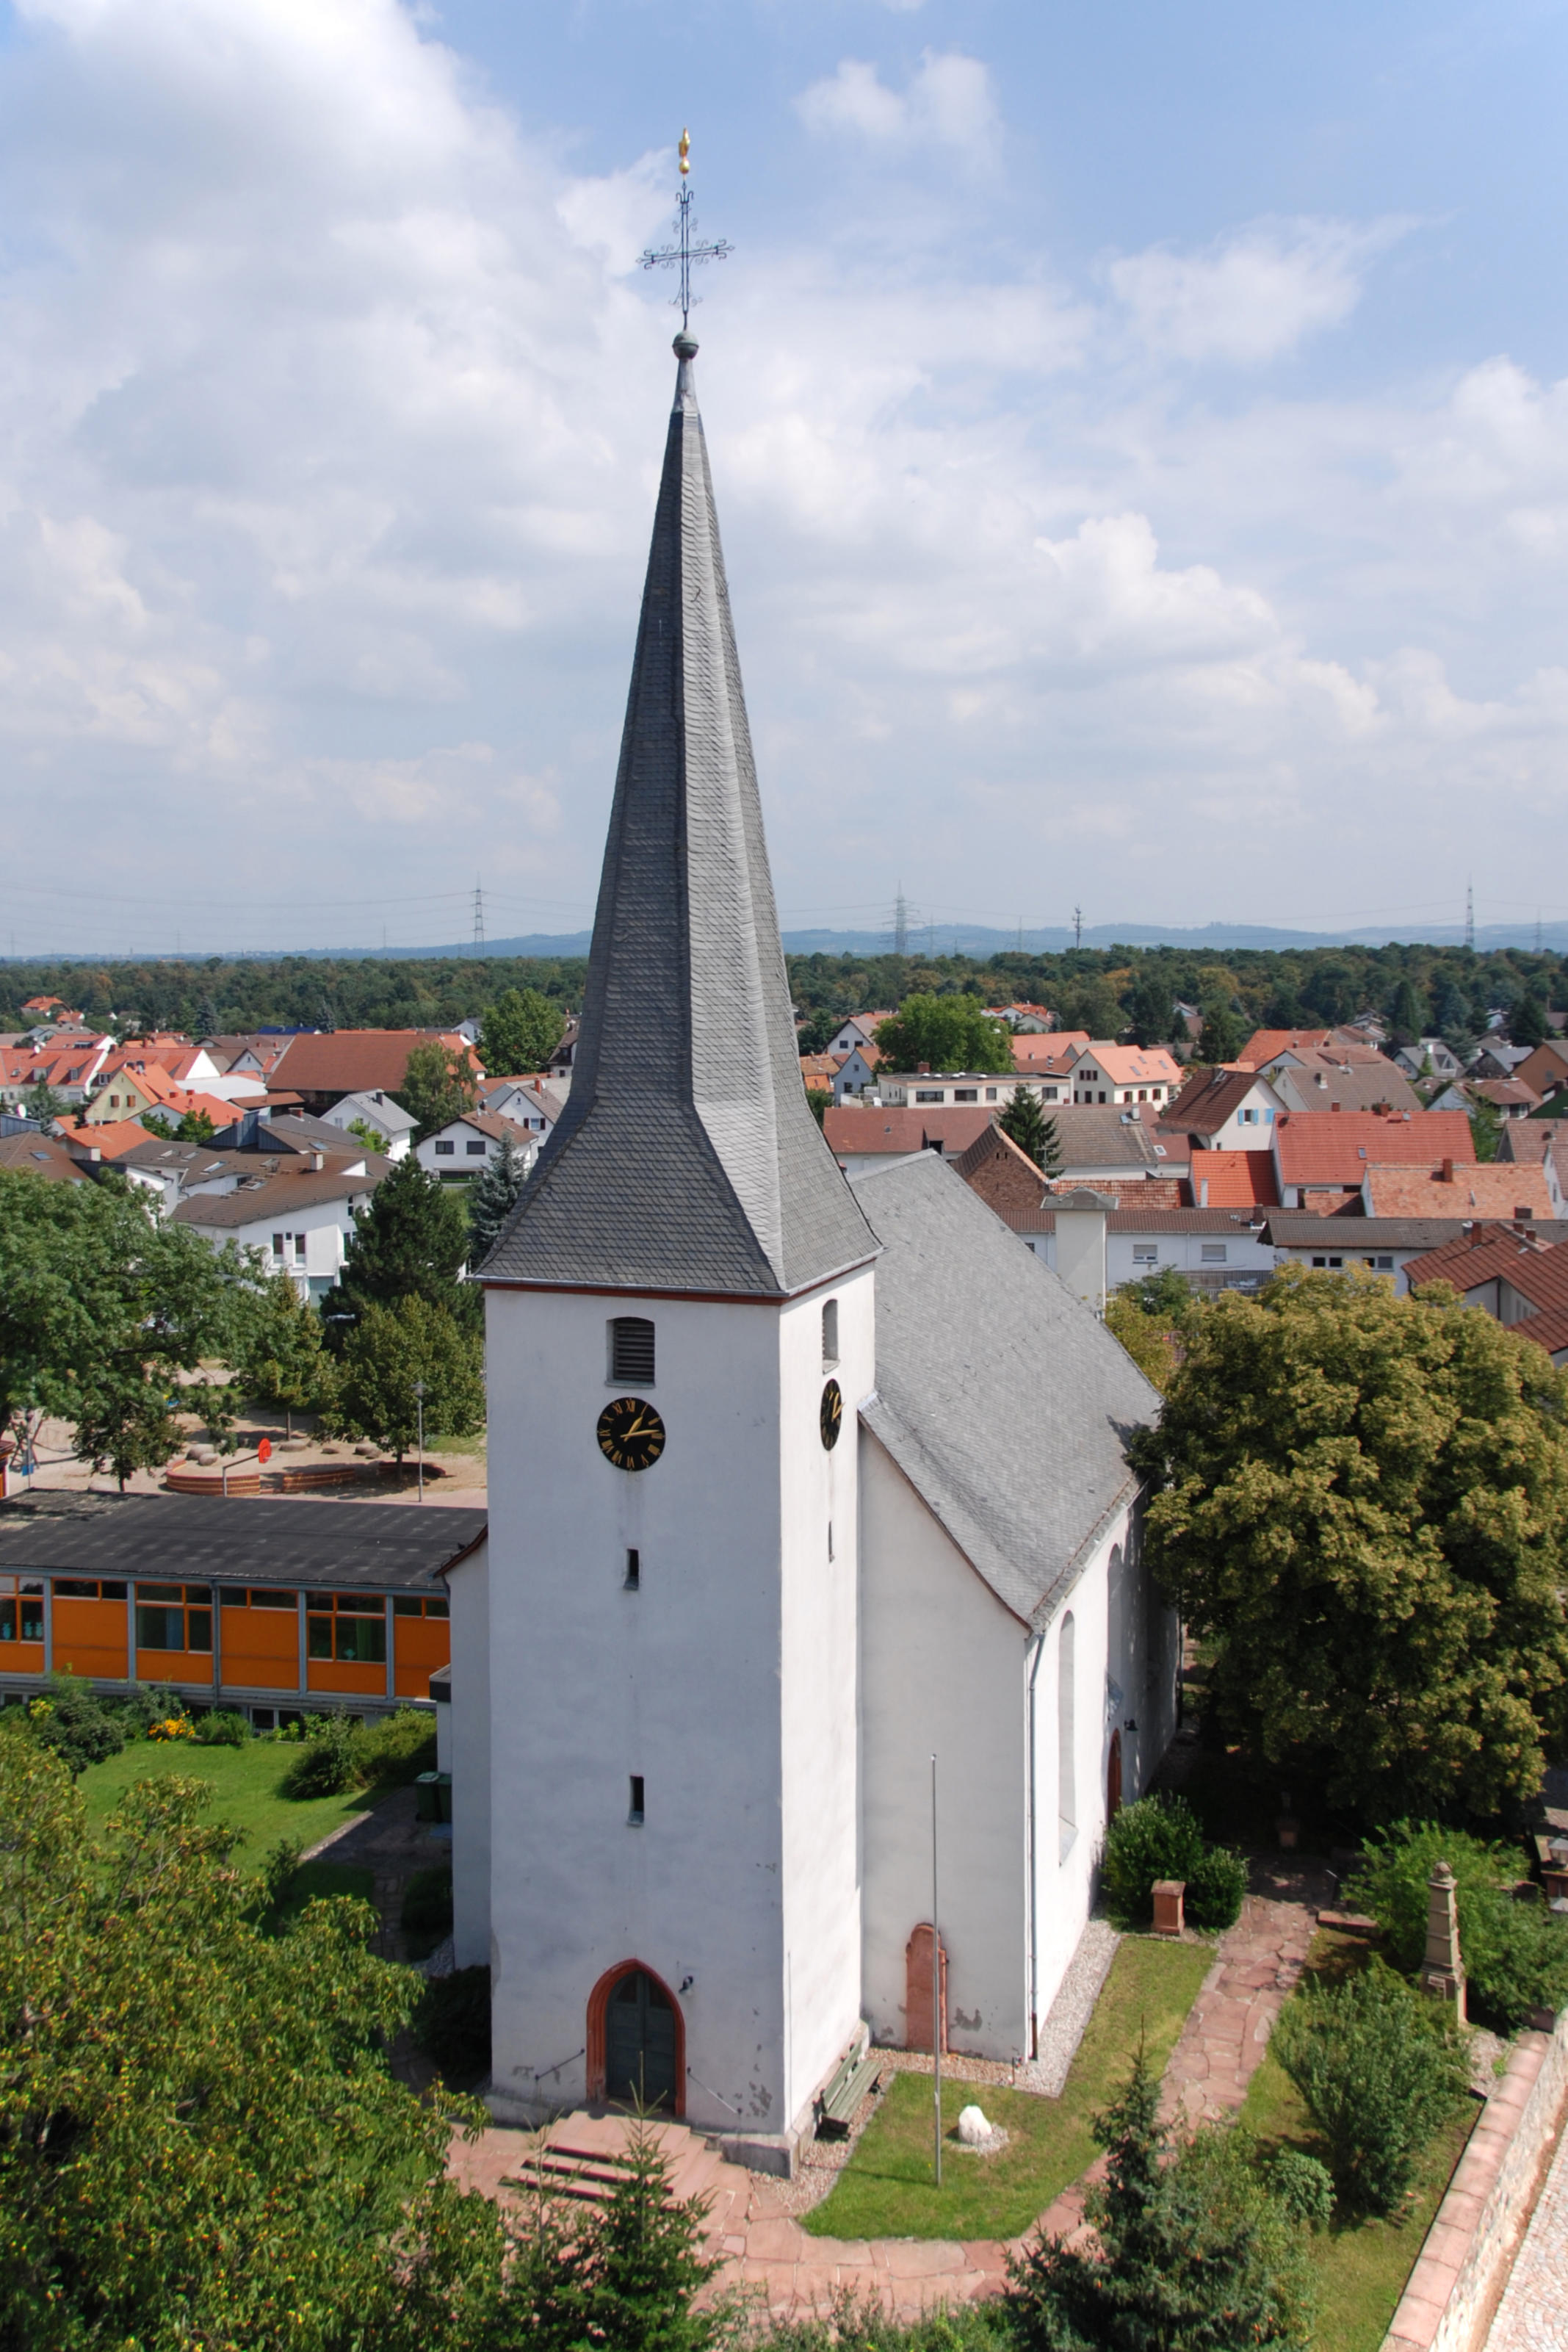 Das heutige Kirchengebäude der Evangelischen Kirche Eschollbrücken wurde im Jahr 1728 eingeweiht. Die Orgel ist eines der wenigen erhaltenen Exemplare des Darmstädter Orgelbaumeisters Keller. In der Kirche befindet sich zudem ein Taufstein mit Inschrift a